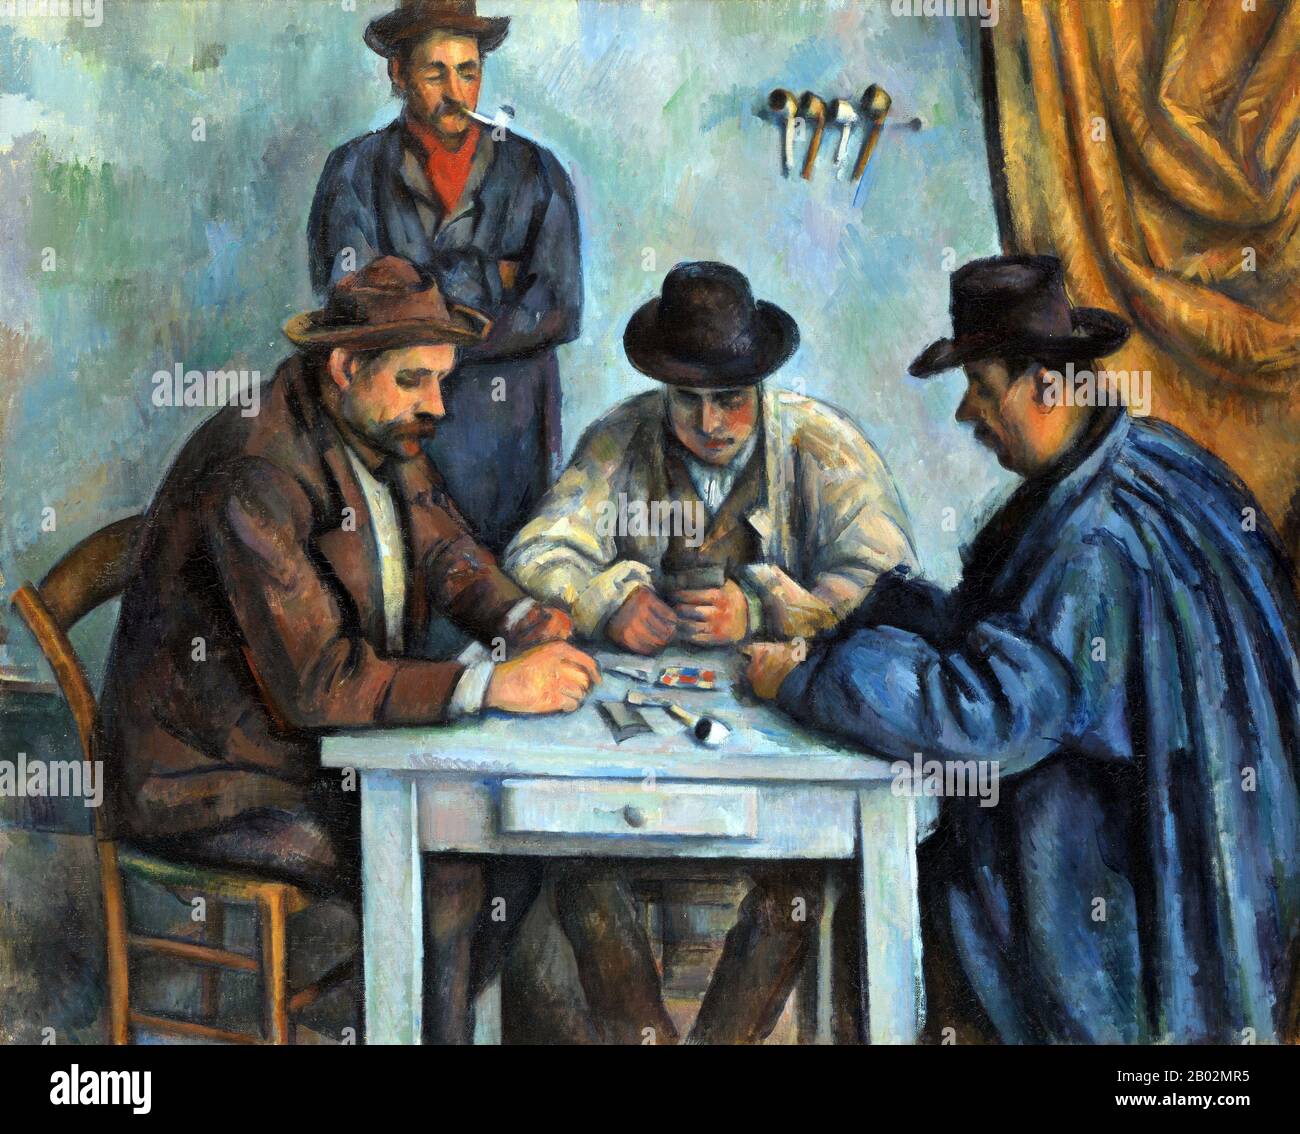 Le Lecteur de cartes est une série de peintures à l'huile de l'artiste postimpressionniste français Paul Cézanne. Peint pendant la dernière période de Cézanne au début des années 1890, il y a cinq peintures dans la série. Les versions varient en taille et en nombre de joueurs représentés. Cézanne a également réalisé de nombreux dessins et études en vue De la série des Lecteurs de cartes. Une version des Lecteurs de cartes a été vendue en 2011 à la famille royale du Qatar pour un prix variant entre 250 millions de dollars et 300 millions de dollars, ce qui en fait le travail d'art le plus cher jamais vendu. Banque D'Images